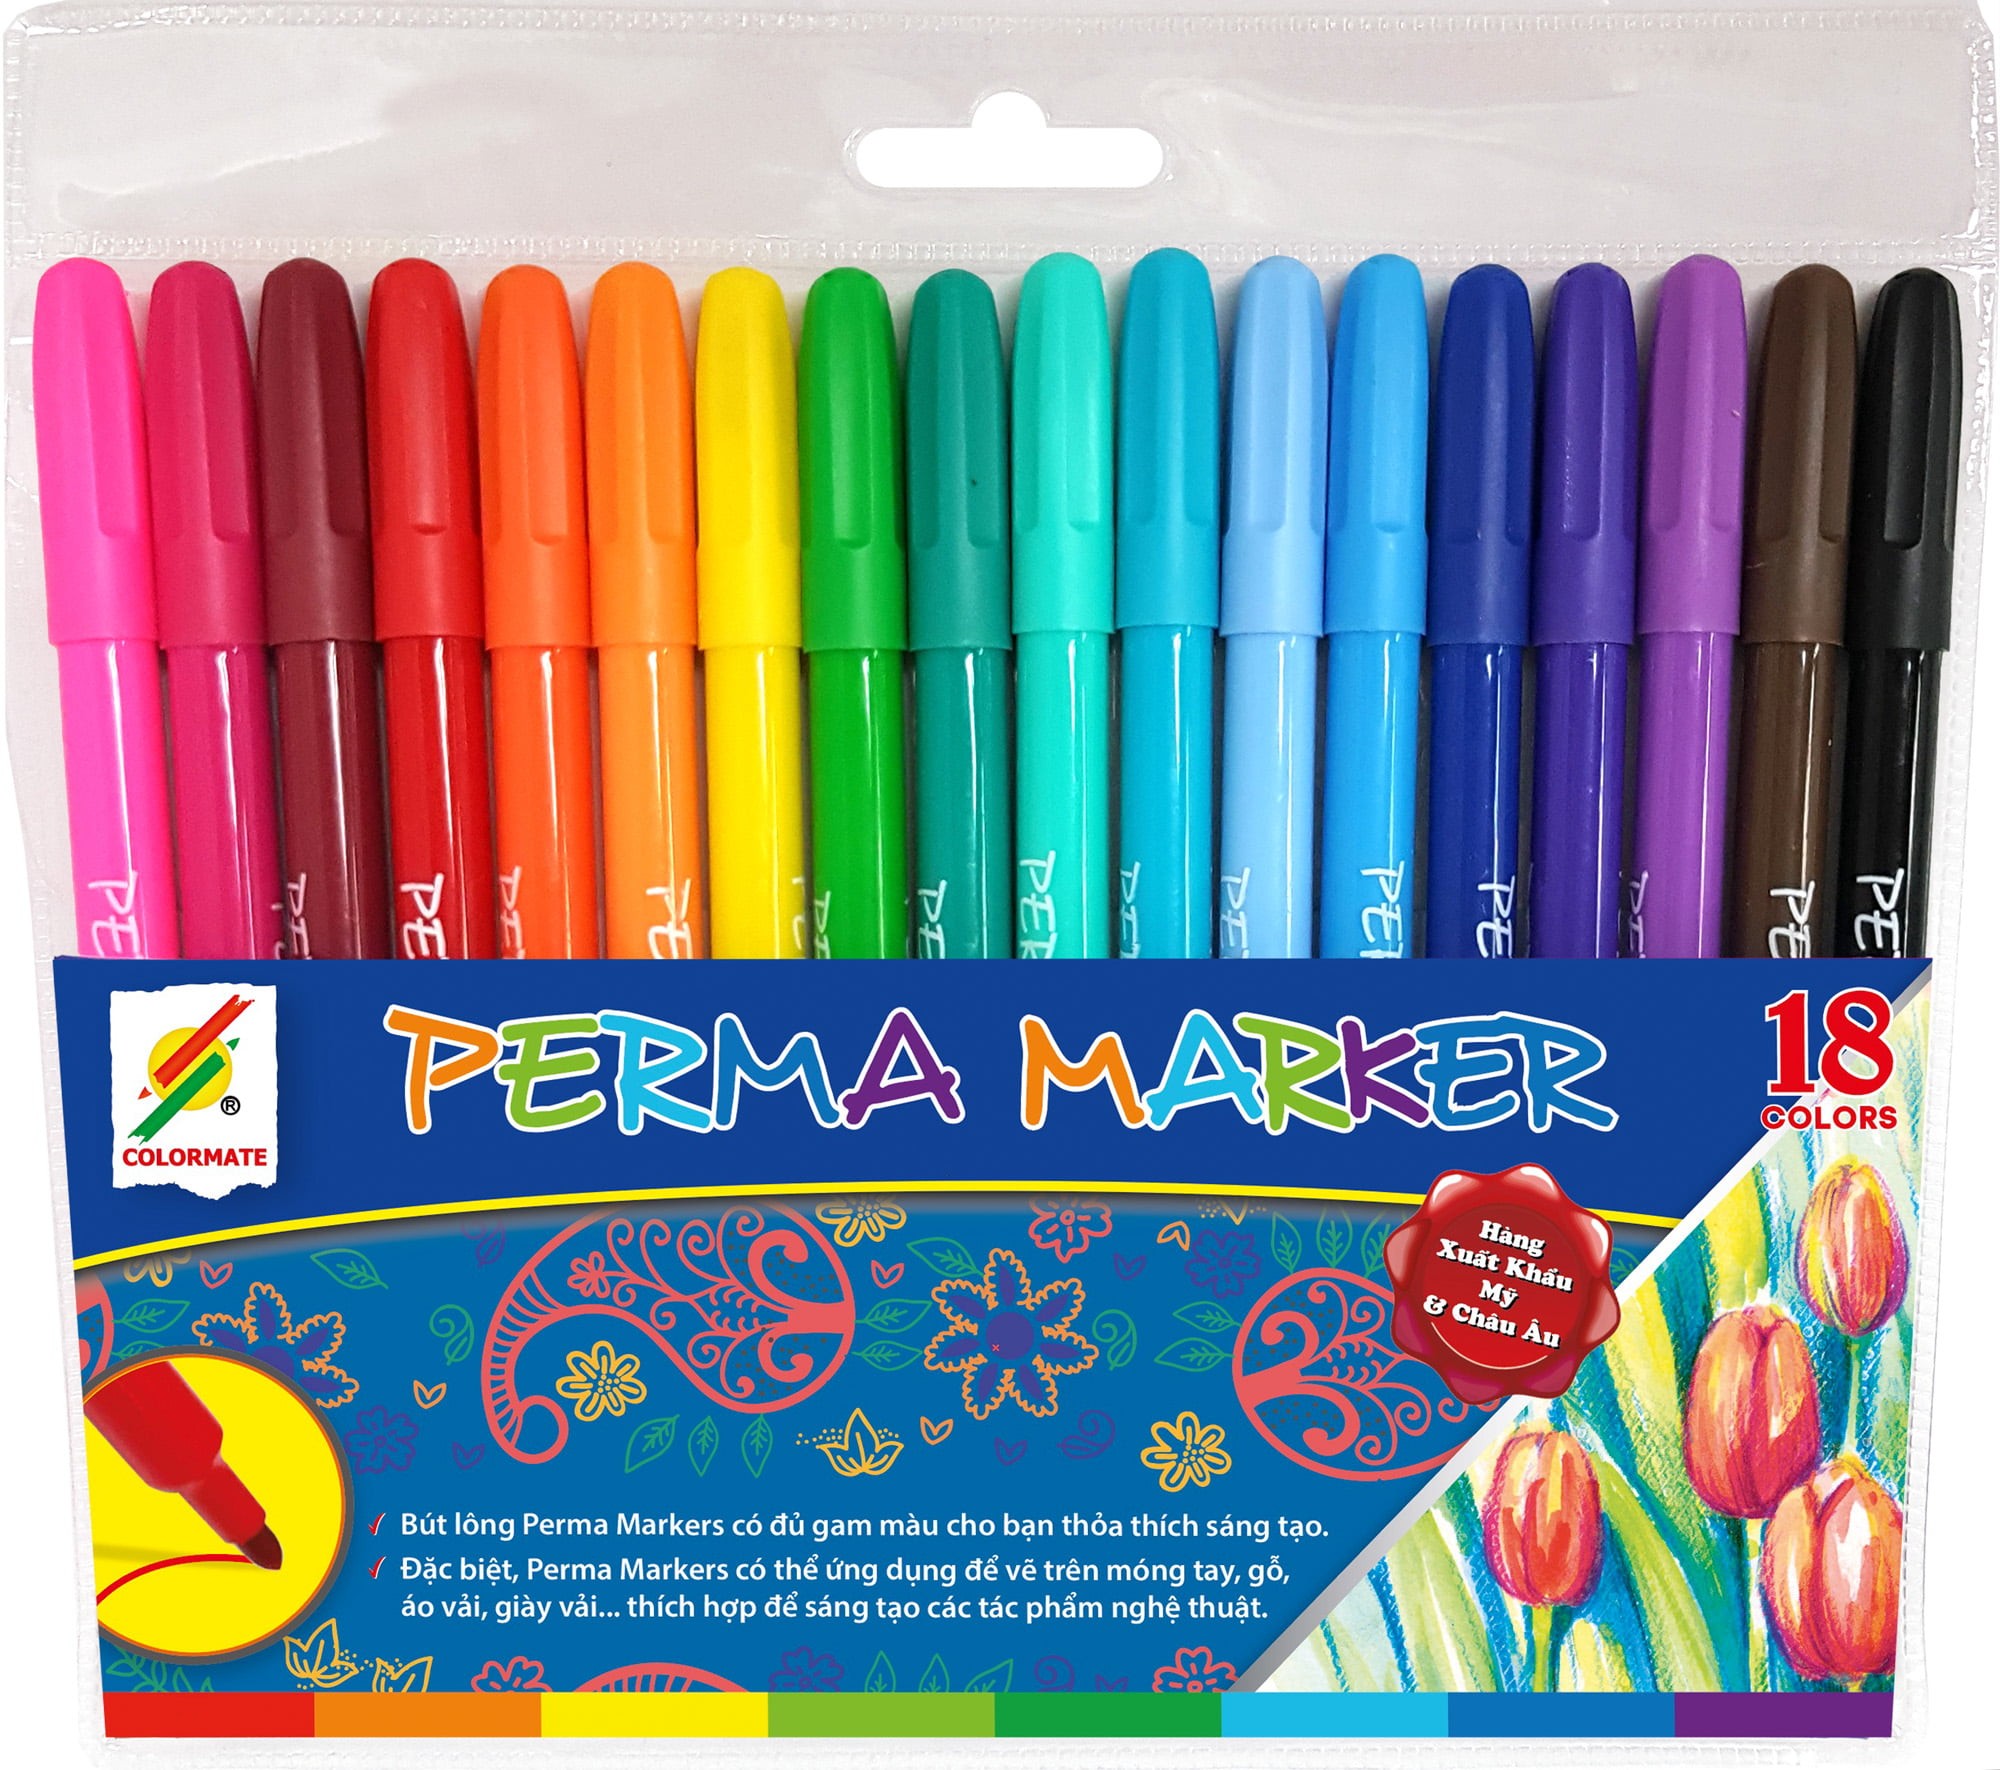 Bút lông Perma Markers: Điều đặc biệt về bút lông Perma Markers là bạn có thể vẽ trên bất kỳ chất liệu nào, với màu sắc đa dạng và khả năng chống thấm tuyệt hảo. Chúng được sử dụng rộng rãi trong việc tạo ra những tác phẩm nghệ thuật đẹp mắt, đặc biệt trên các bề mặt khó vẽ như da, thép, kim loại và gỗ.